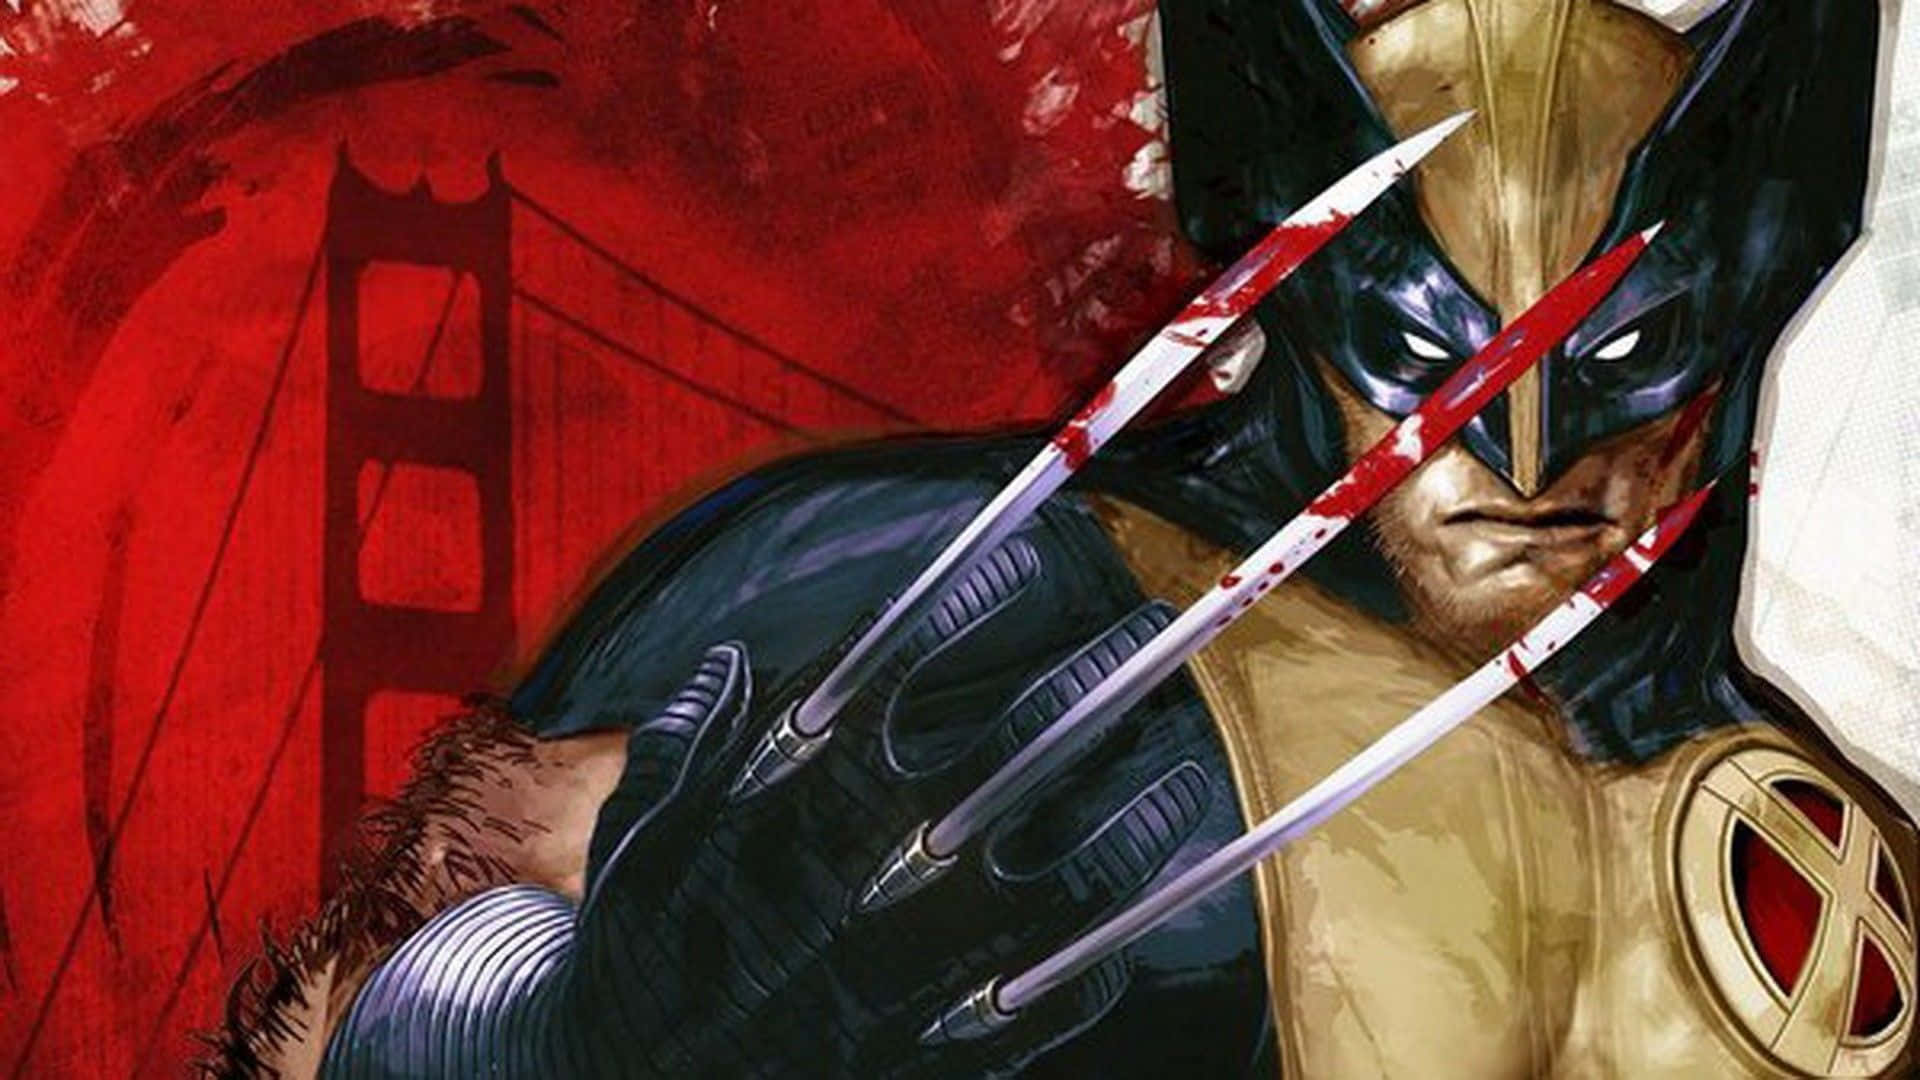 Personajede X-men Wolverine Scratch De Alta Definición Lgbt Pride Wallpaper Fondo de pantalla